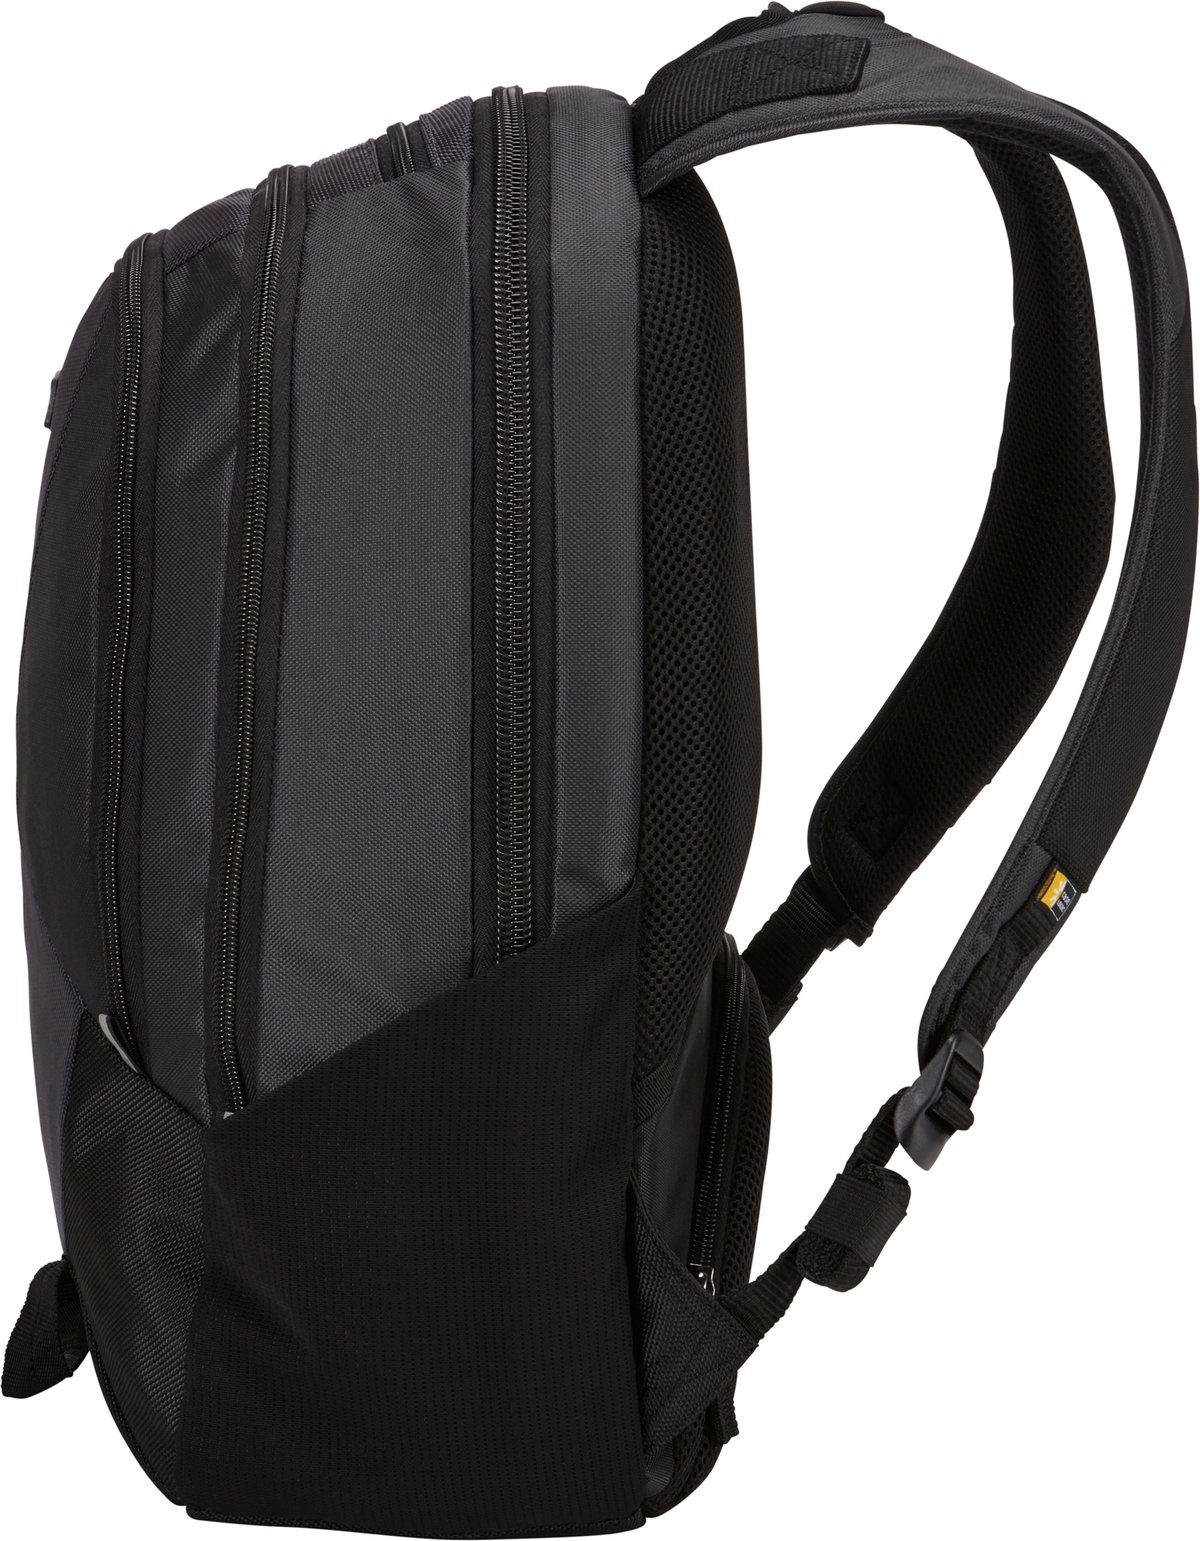 Notebookrucksack Logic 14 Case Professional Backpack InTransit BLK